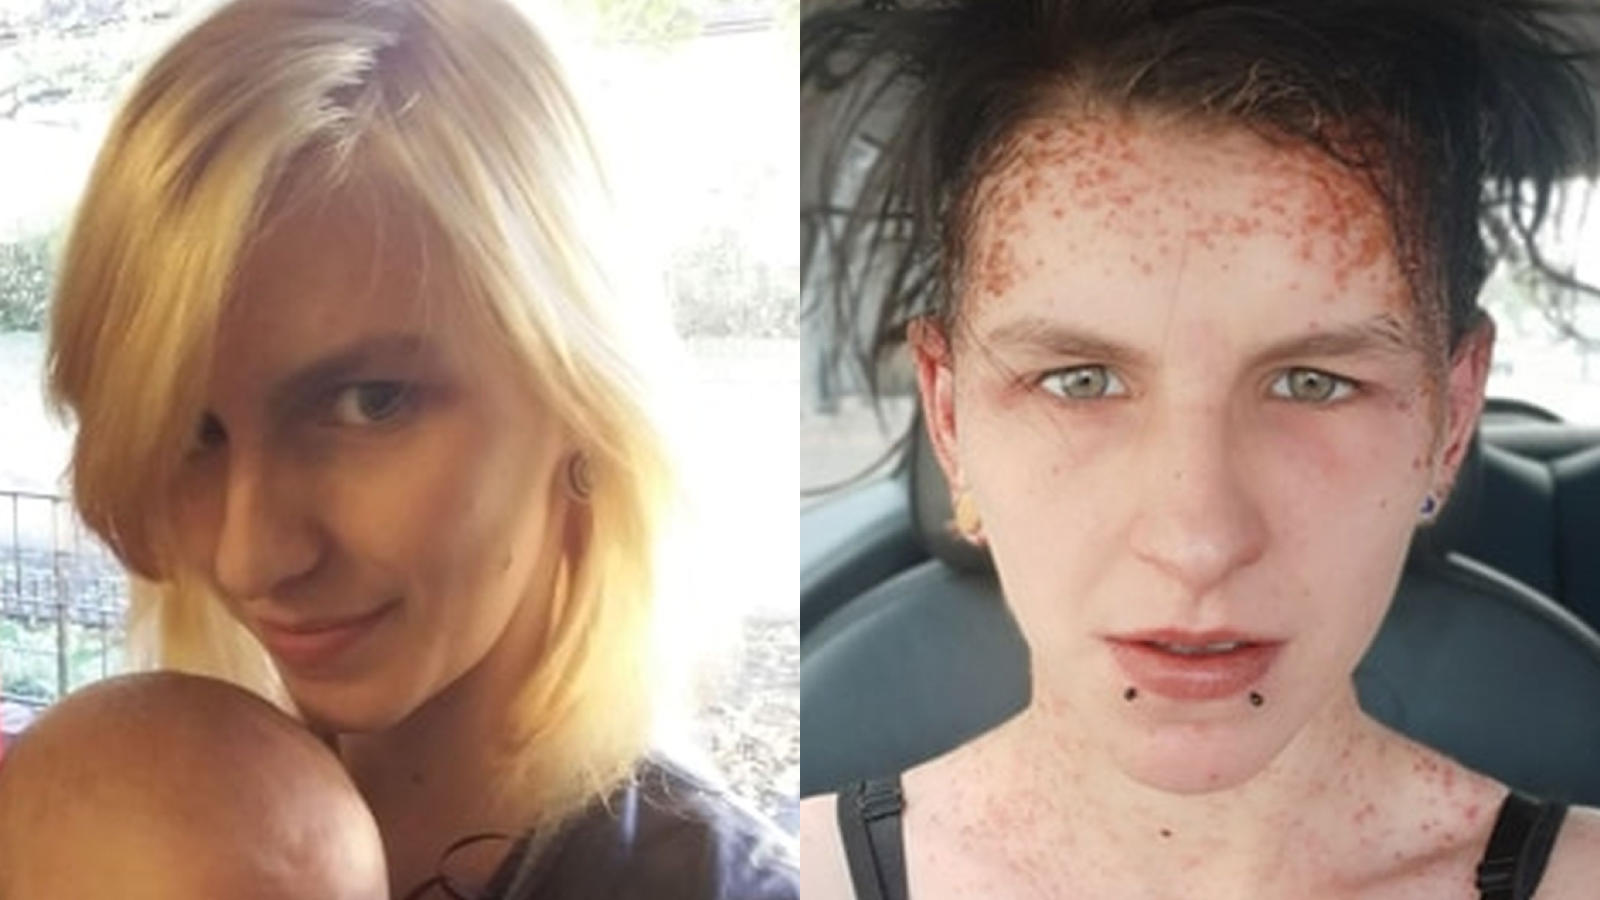 Haarfarbe Aktion Geht Schief 22 Jahrige Erleidet Allergischen Schock Im Gesicht